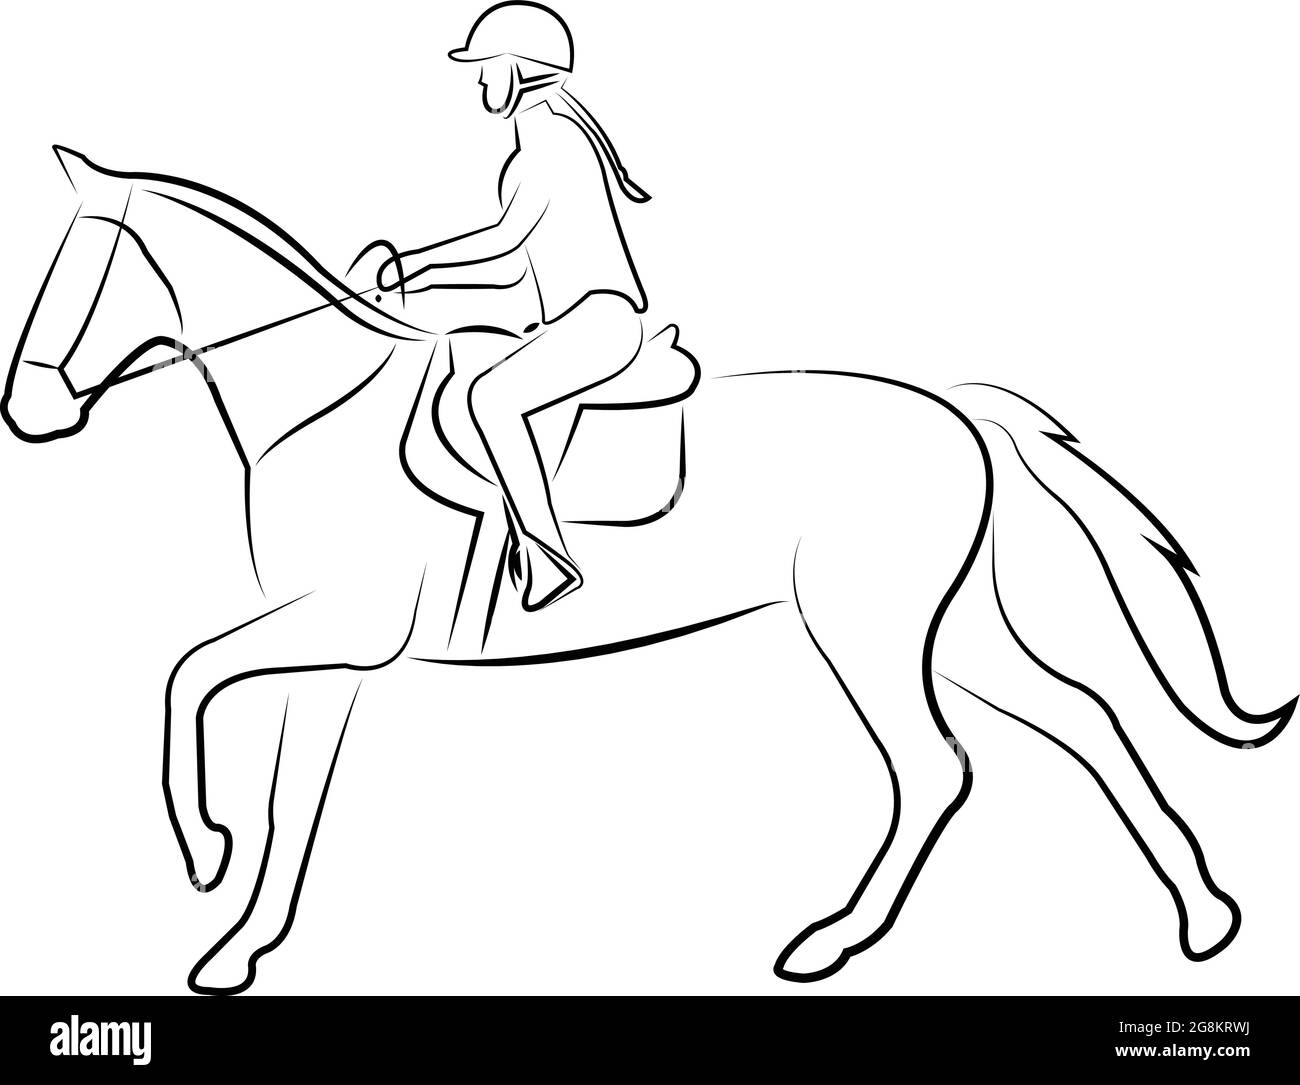 equitation line art - vecteur Illustration de Vecteur